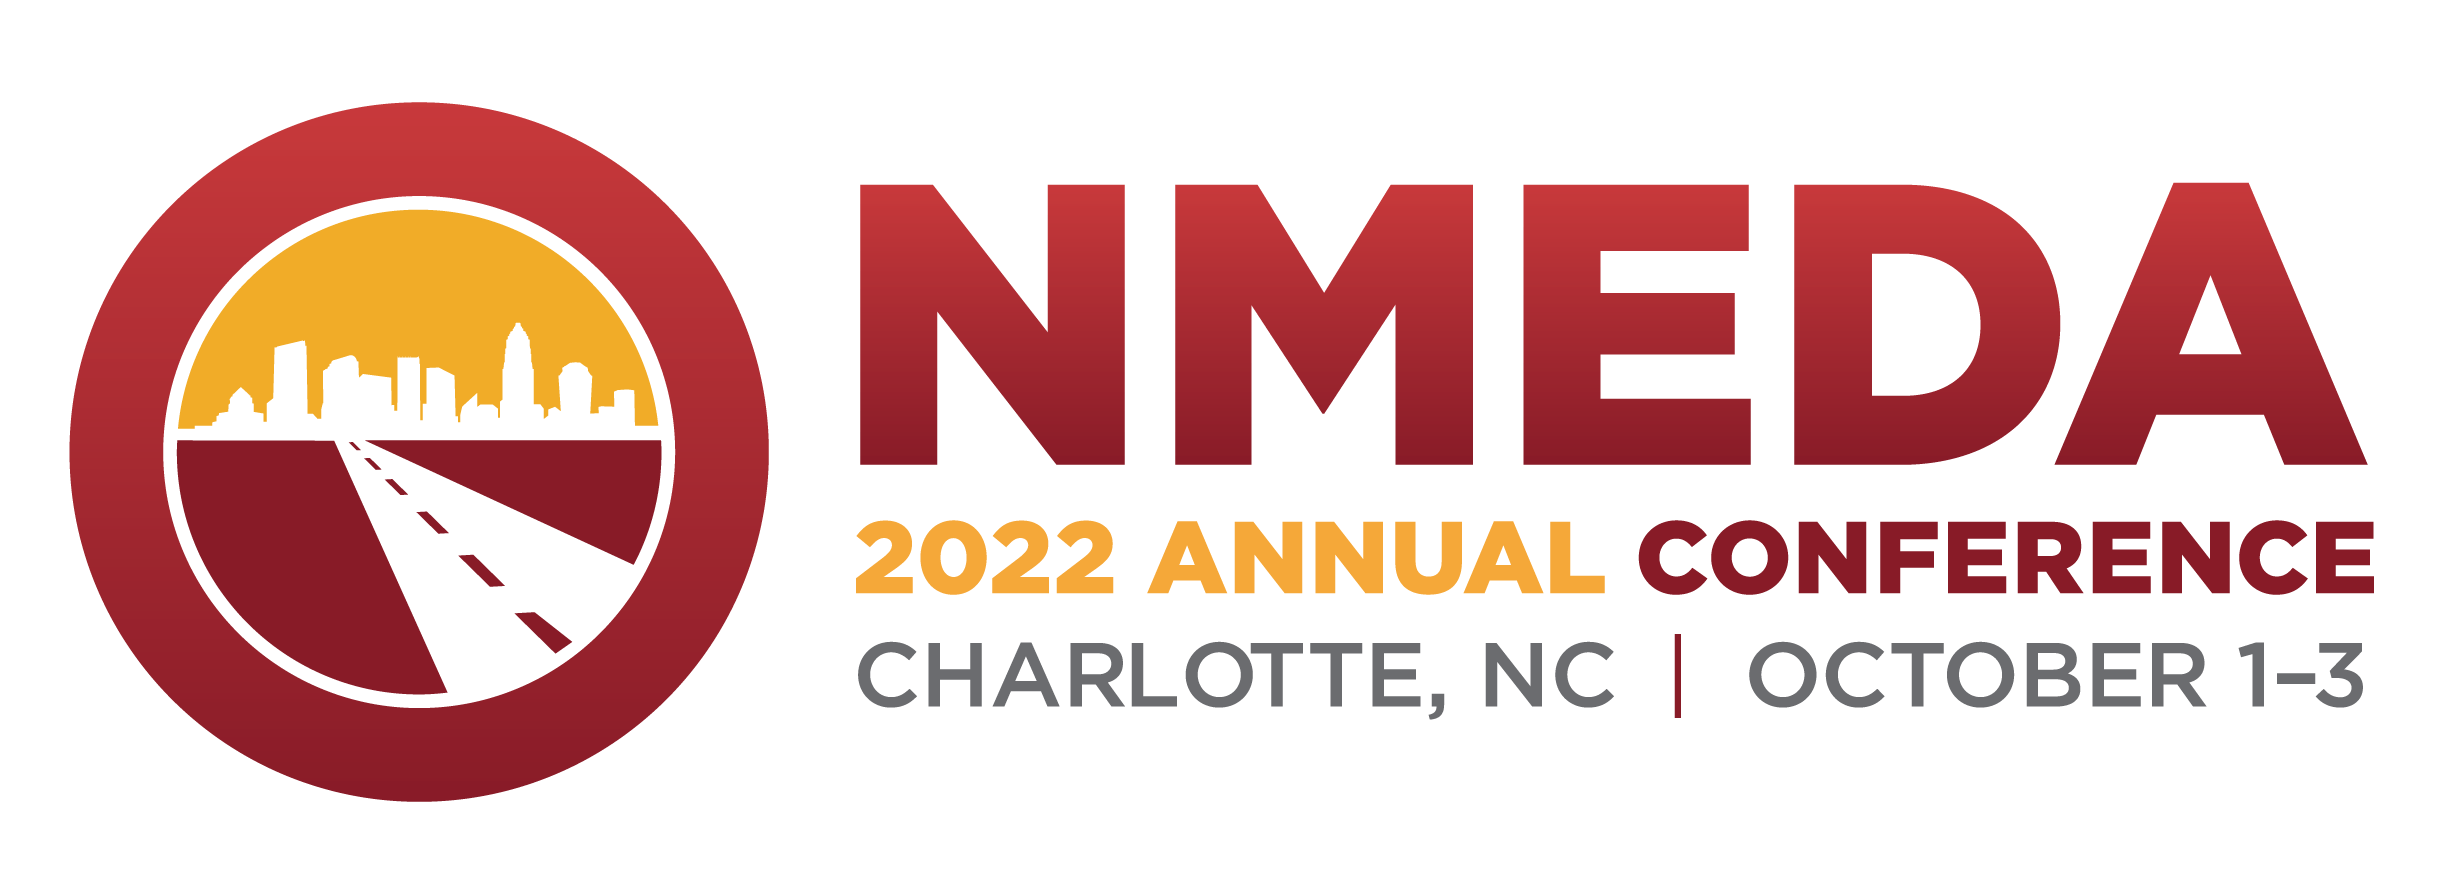 NMEDA Conference Registration